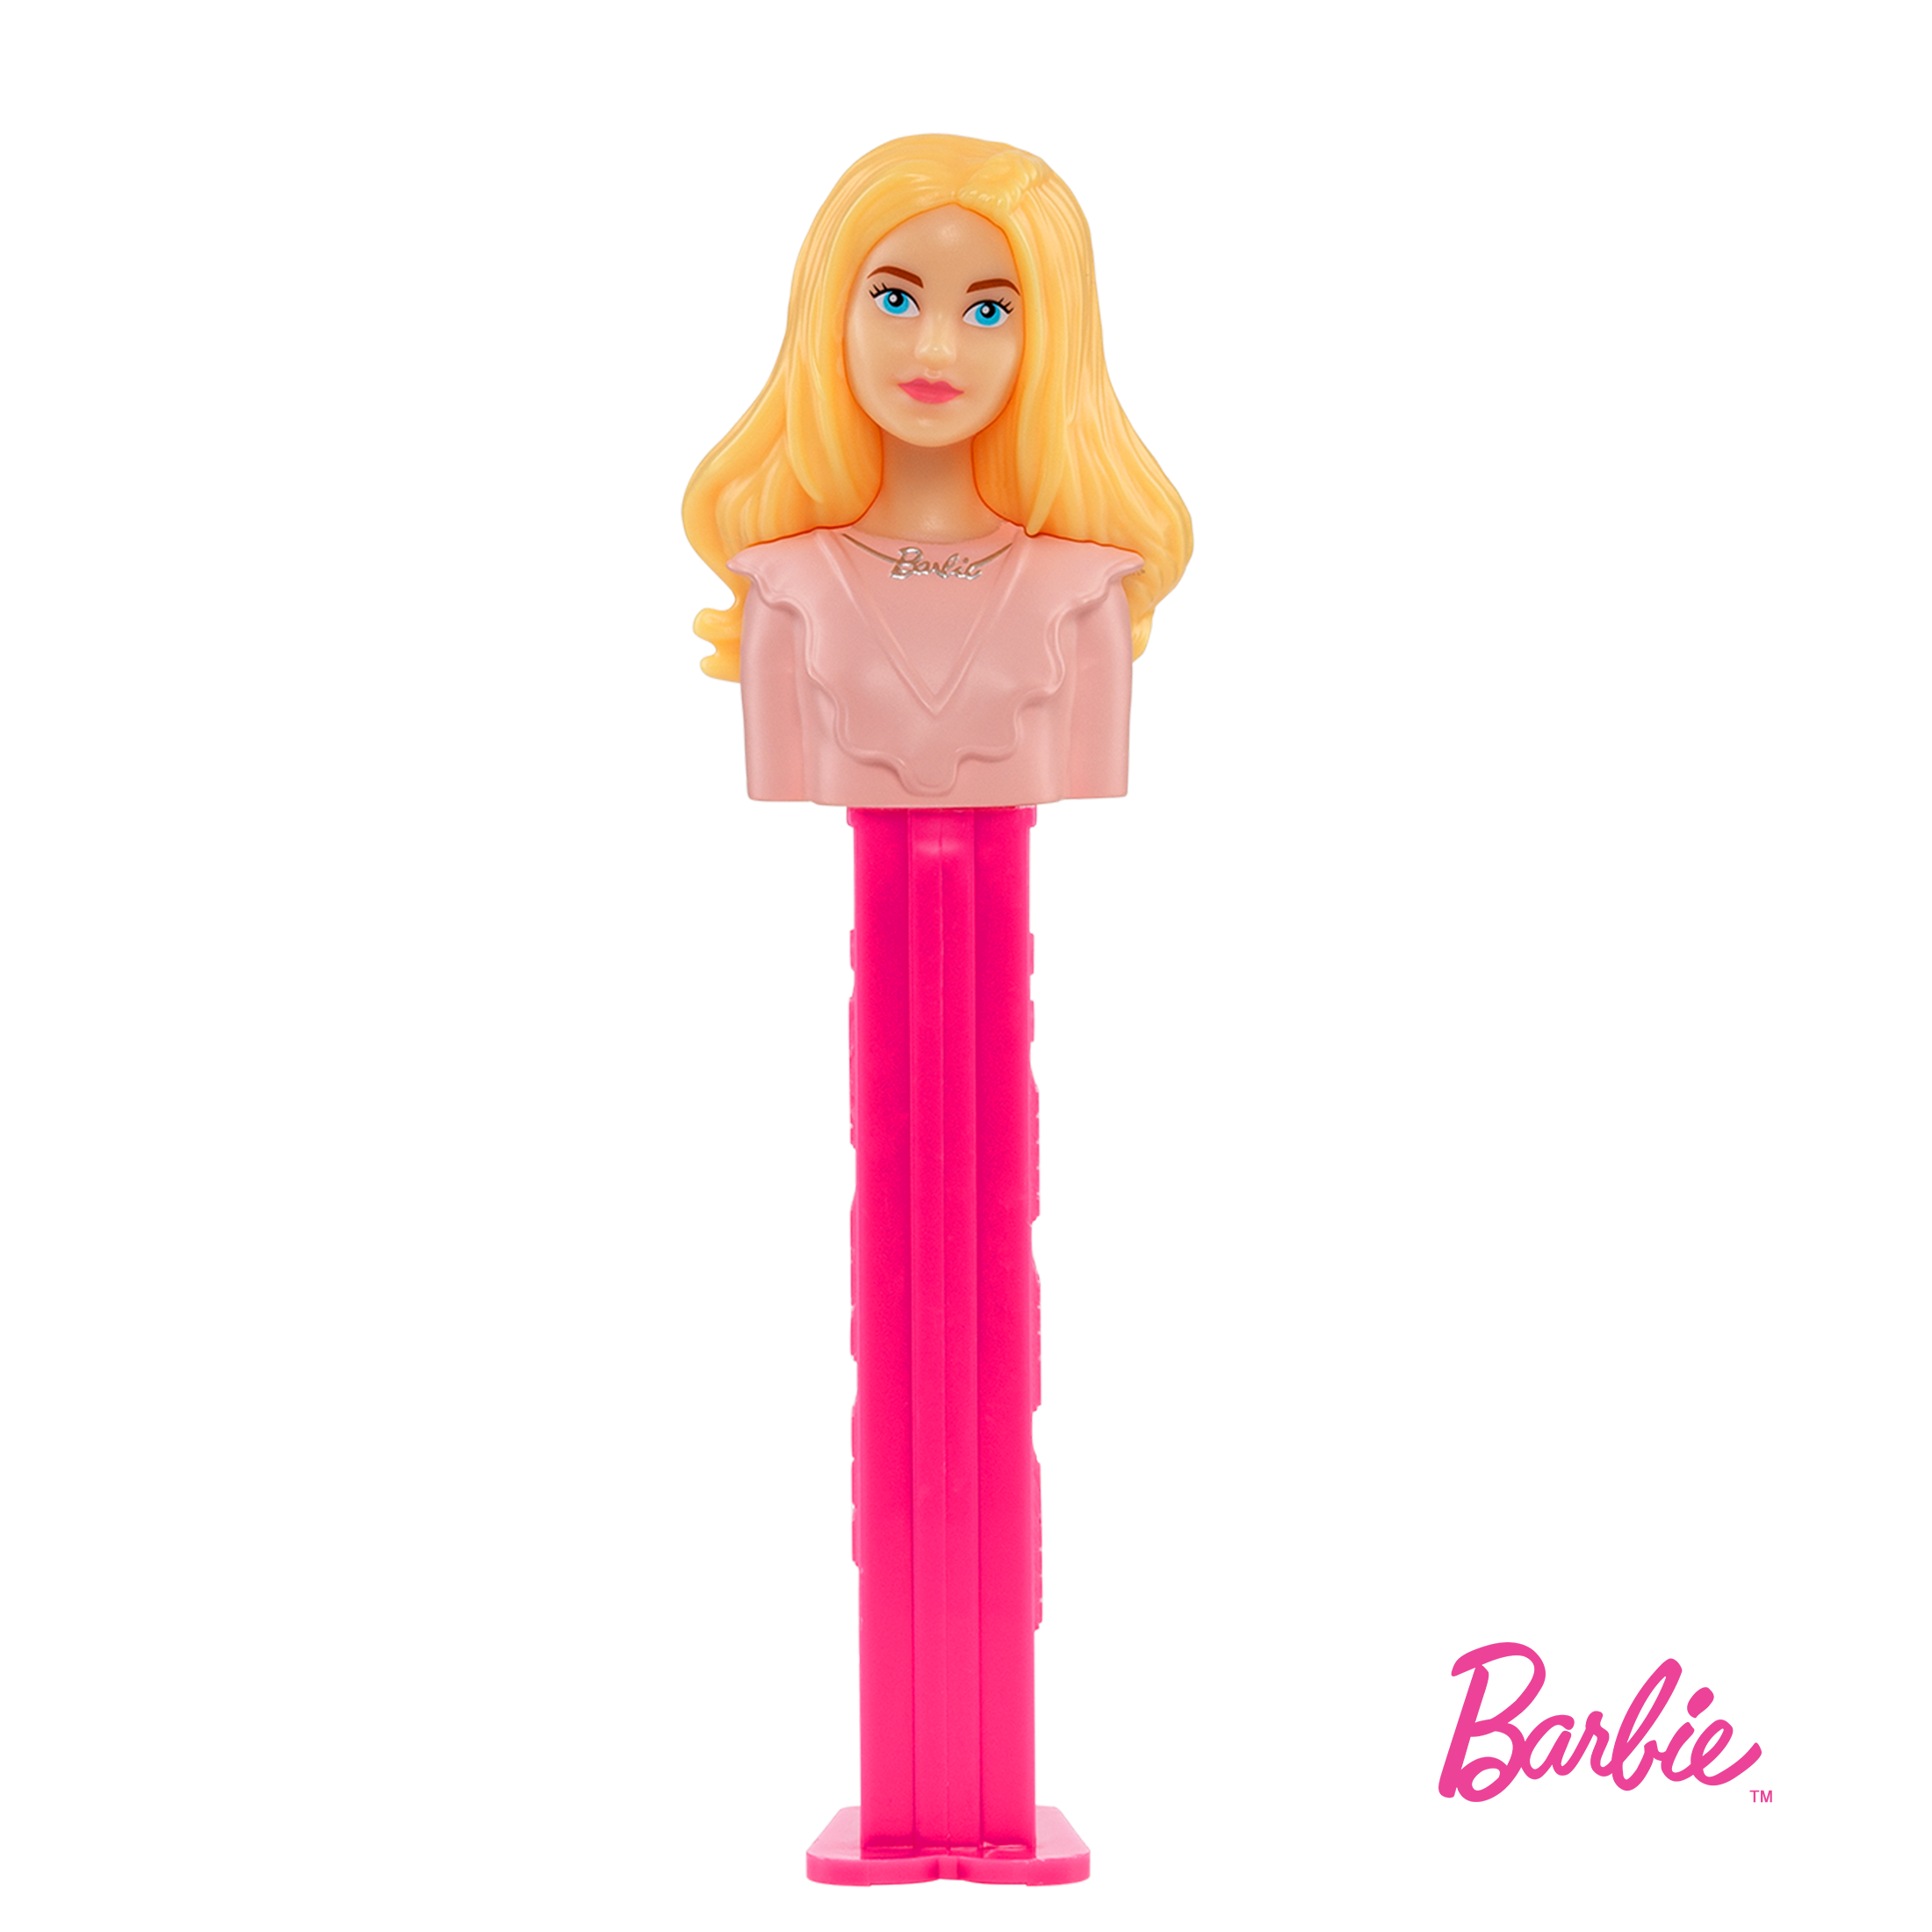 Barbie™ (Blonde Hair)